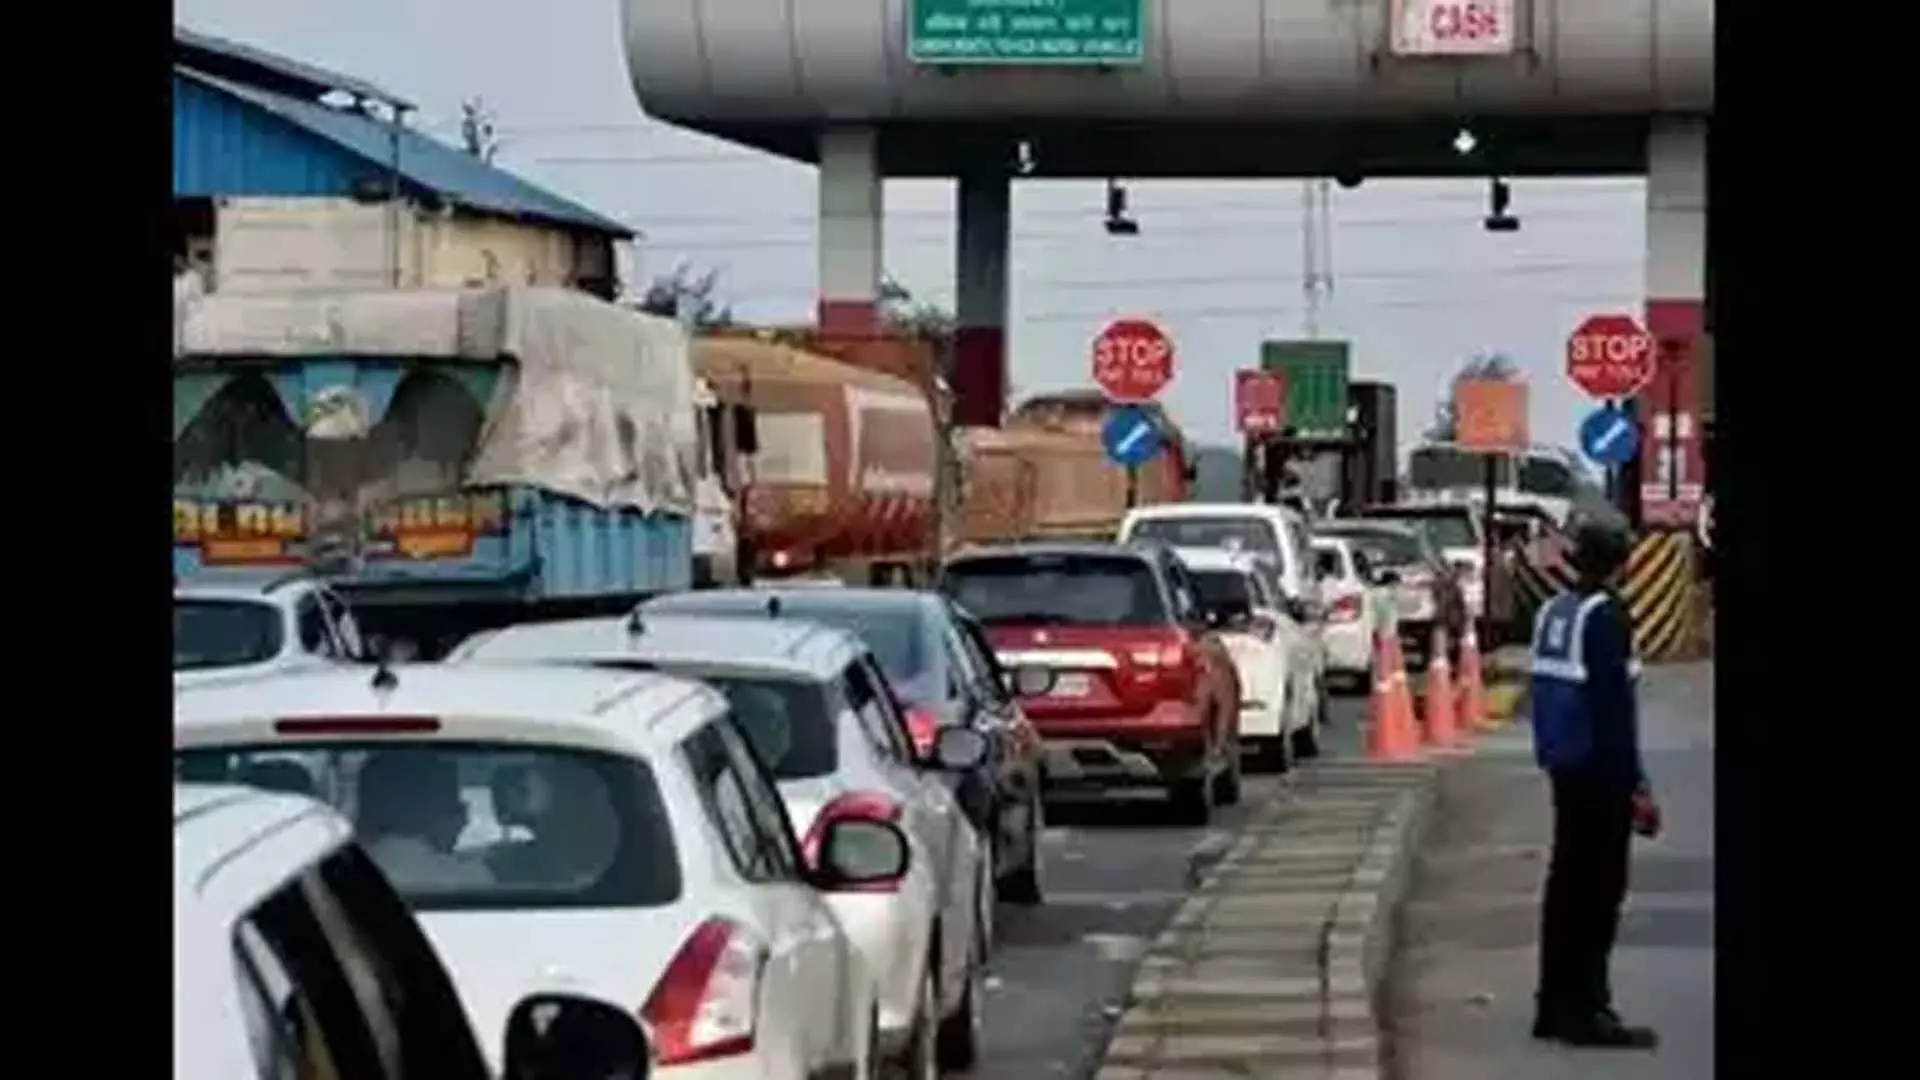 MUMBAI NEWS:  मुंबई-अहमदाबाद राजमार्ग का काम घटिया, स्थानीय लोगों ने टोल वसूली रोकी